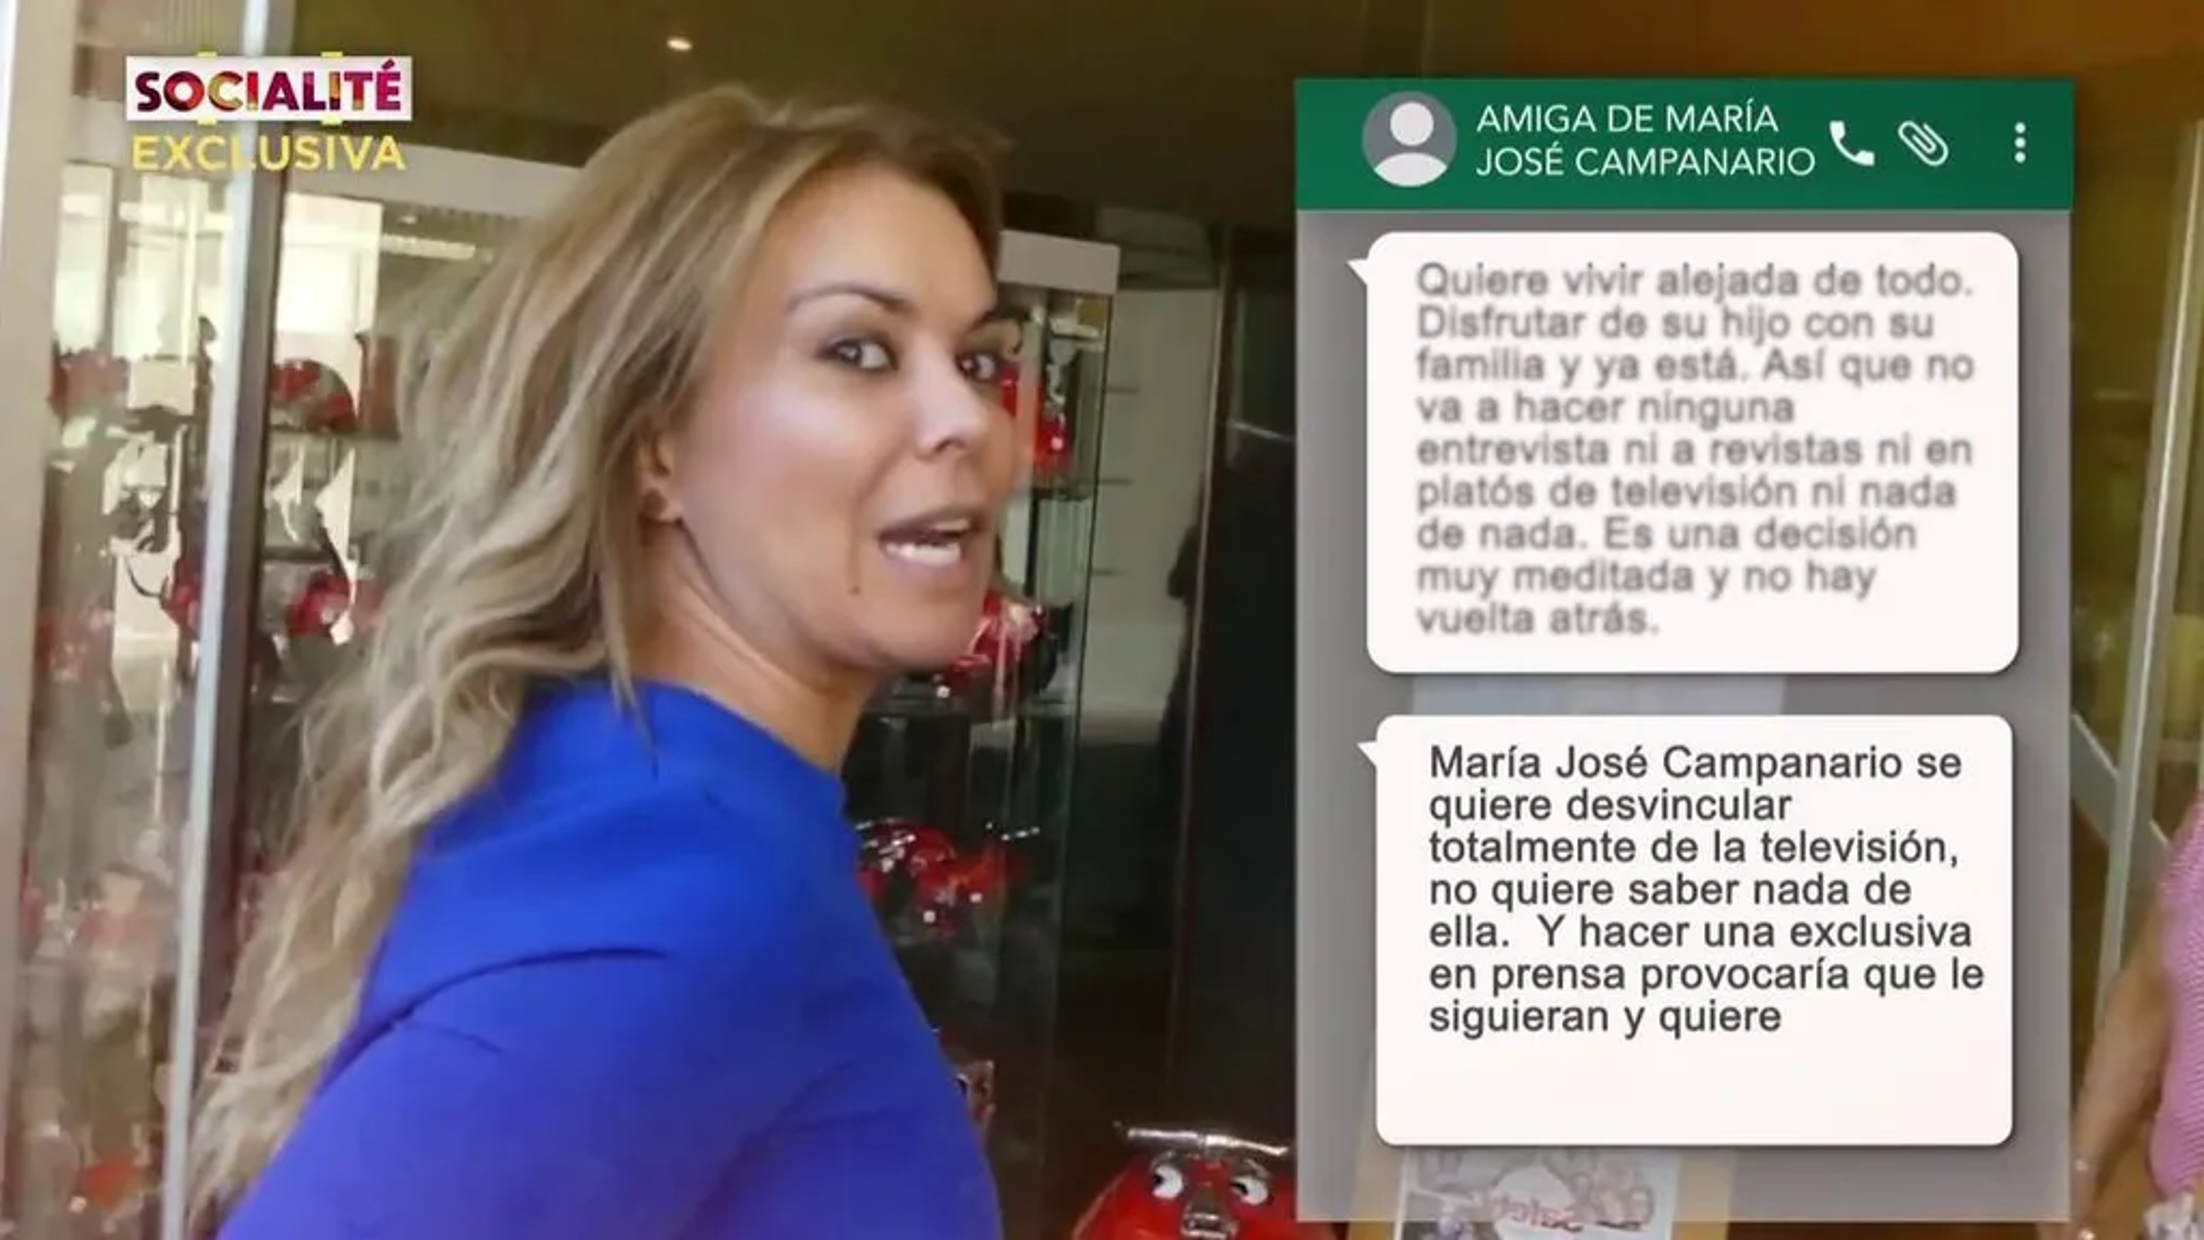 'Socialité' ha dado más detalles sobre la retirada del foco mediático de María José Campanario.